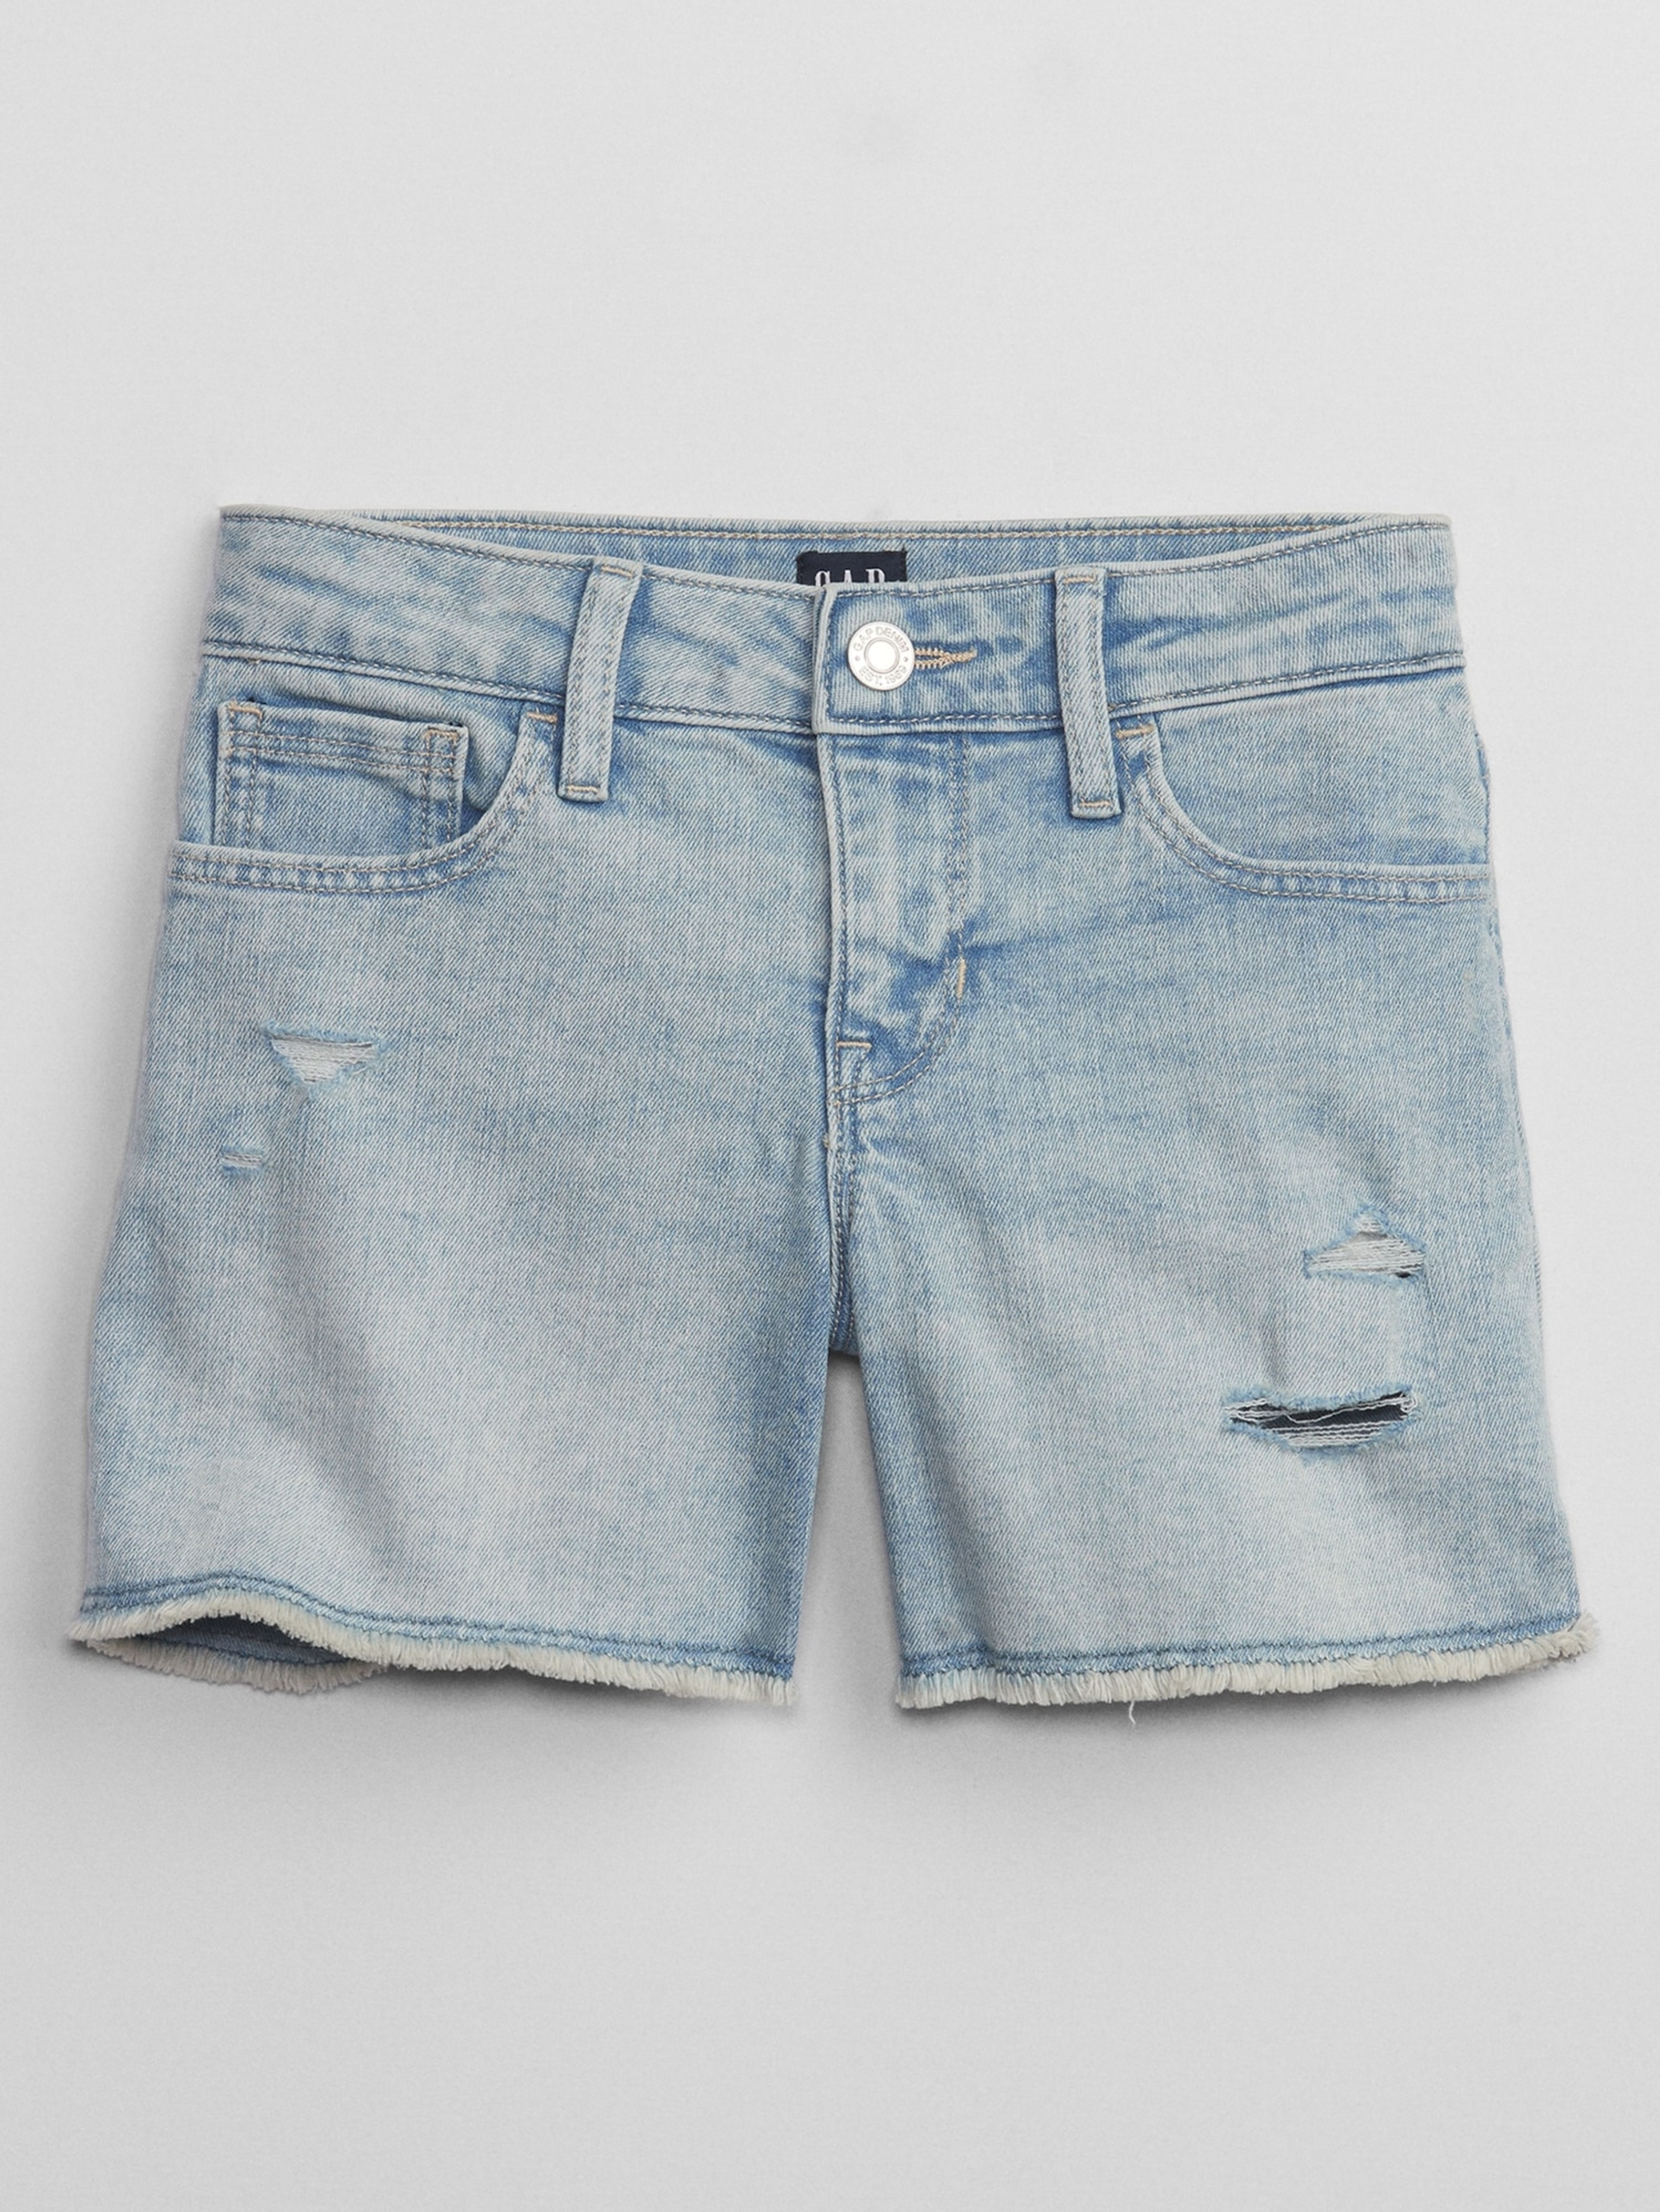 Jeans-Shorts für Kinder